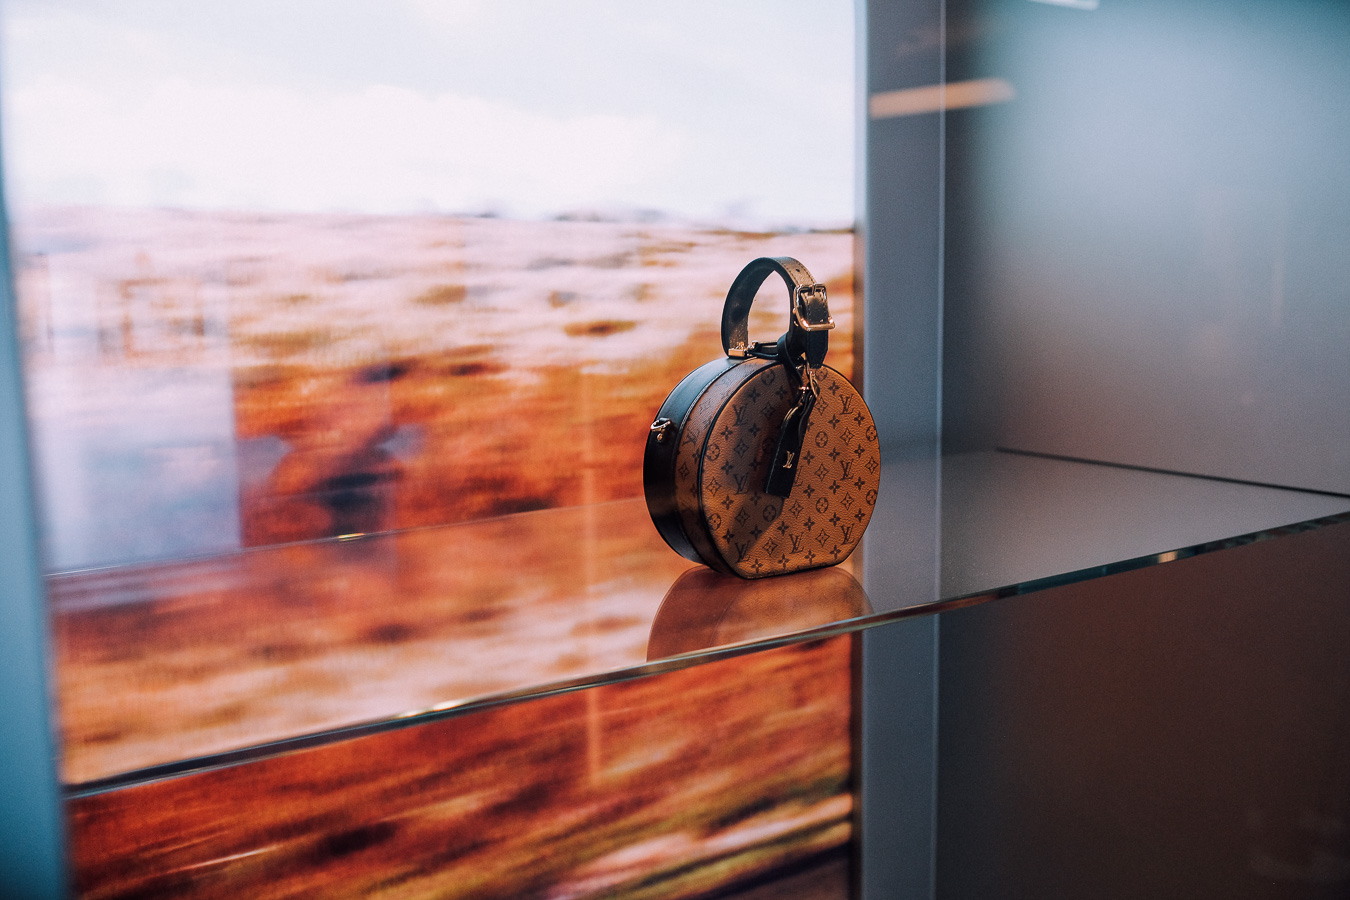 Louis Vuitton brings their Time Capsule Exhibit to Toronto's Union